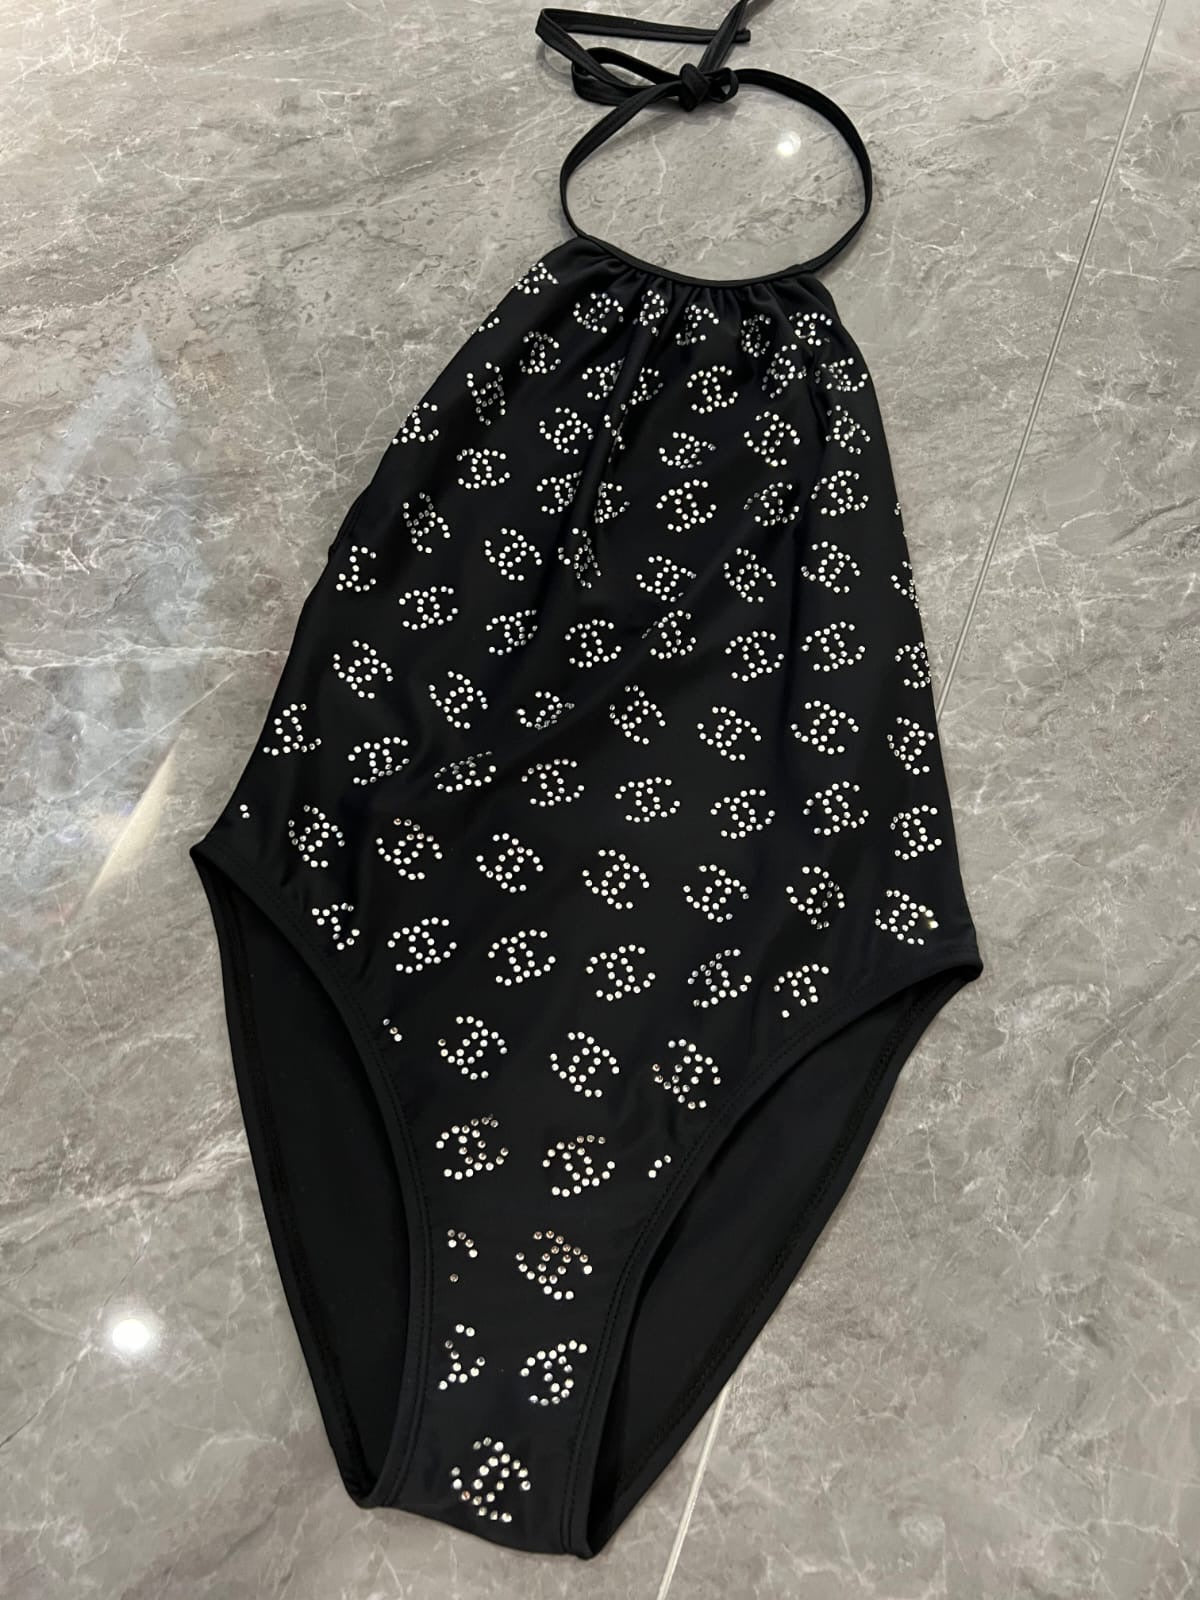 Chanel Swimwear Set